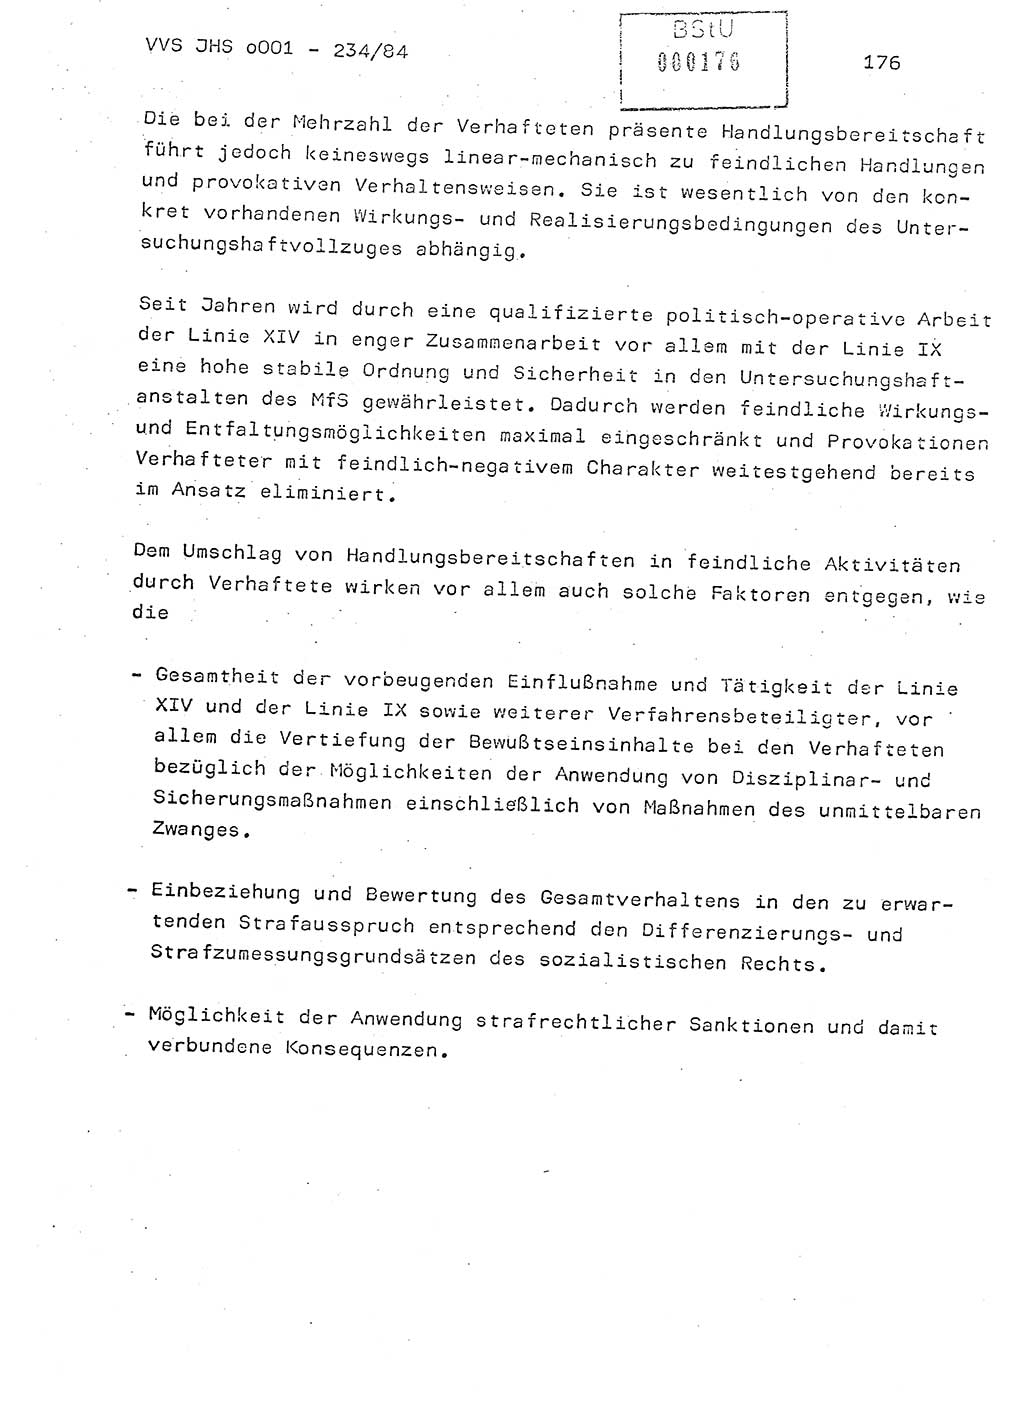 Dissertation Oberst Siegfried Rataizick (Abt. ⅩⅣ), Oberstleutnant Volkmar Heinz (Abt. ⅩⅣ), Oberstleutnant Werner Stein (HA Ⅸ), Hauptmann Heinz Conrad (JHS), Ministerium für Staatssicherheit (MfS) [Deutsche Demokratische Republik (DDR)], Juristische Hochschule (JHS), Vertrauliche Verschlußsache (VVS) o001-234/84, Potsdam 1984, Seite 176 (Diss. MfS DDR JHS VVS o001-234/84 1984, S. 176)